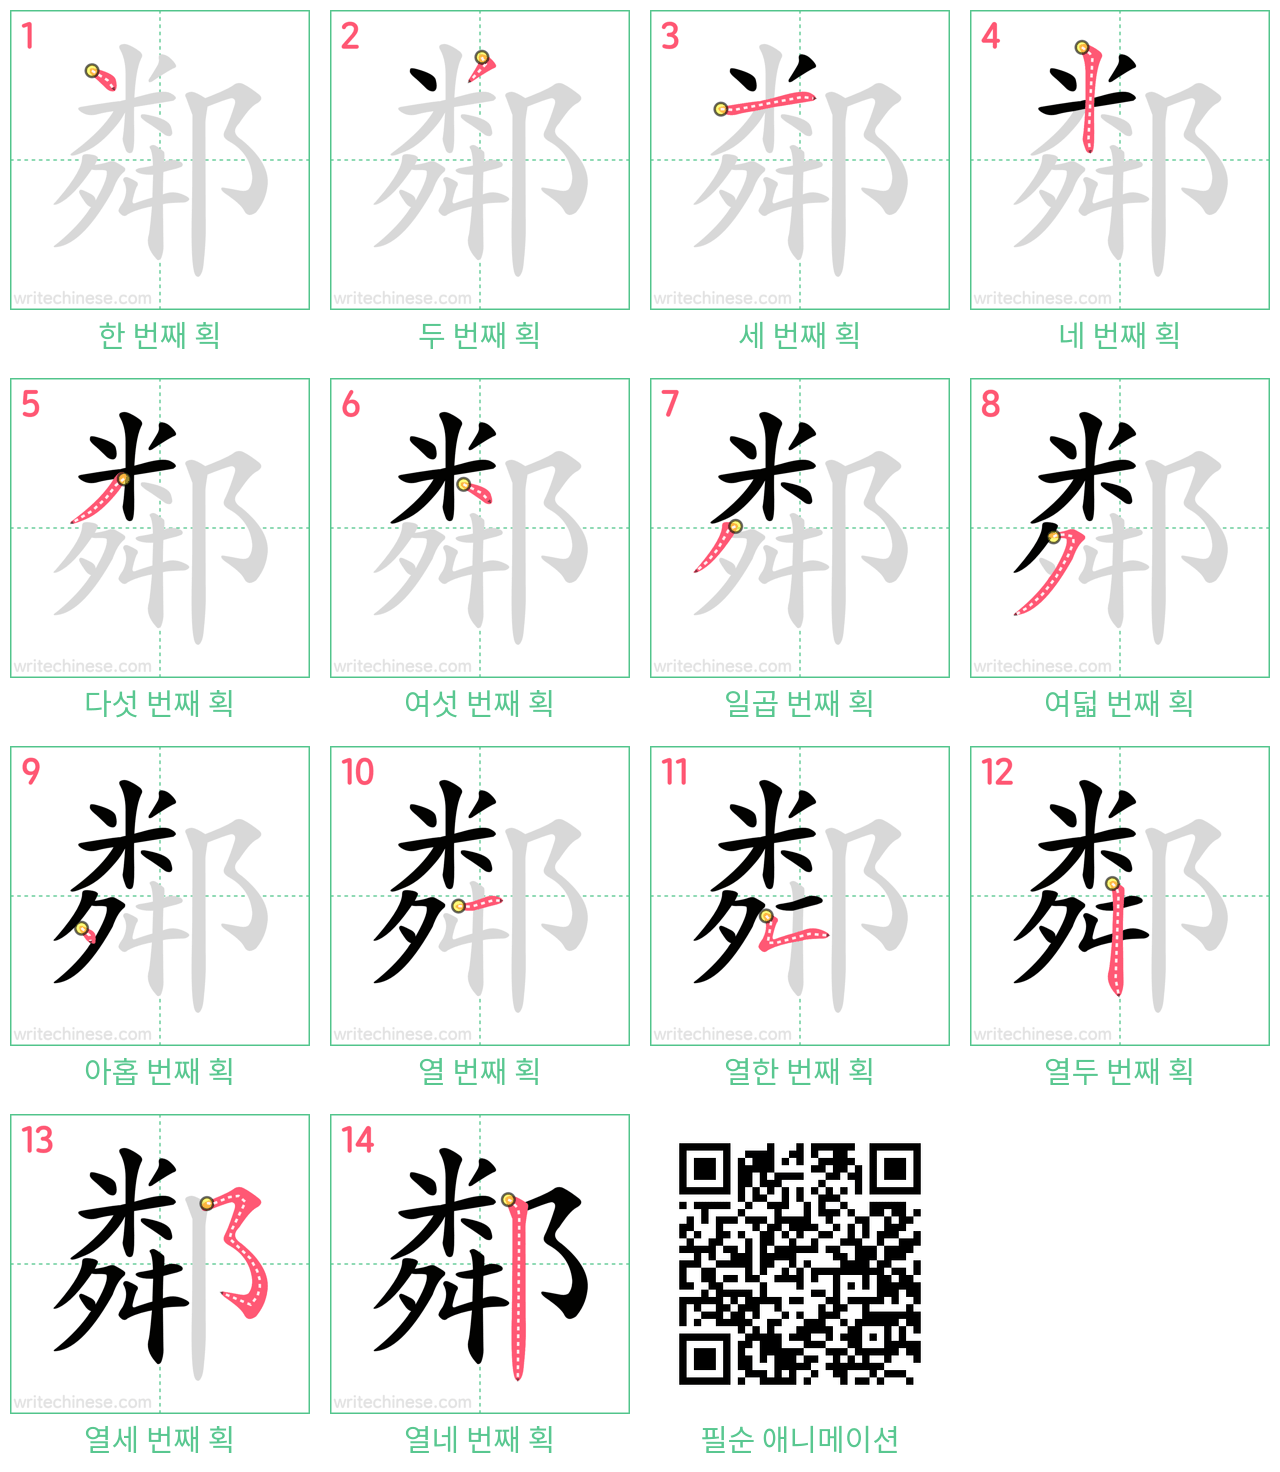 鄰 step-by-step stroke order diagrams